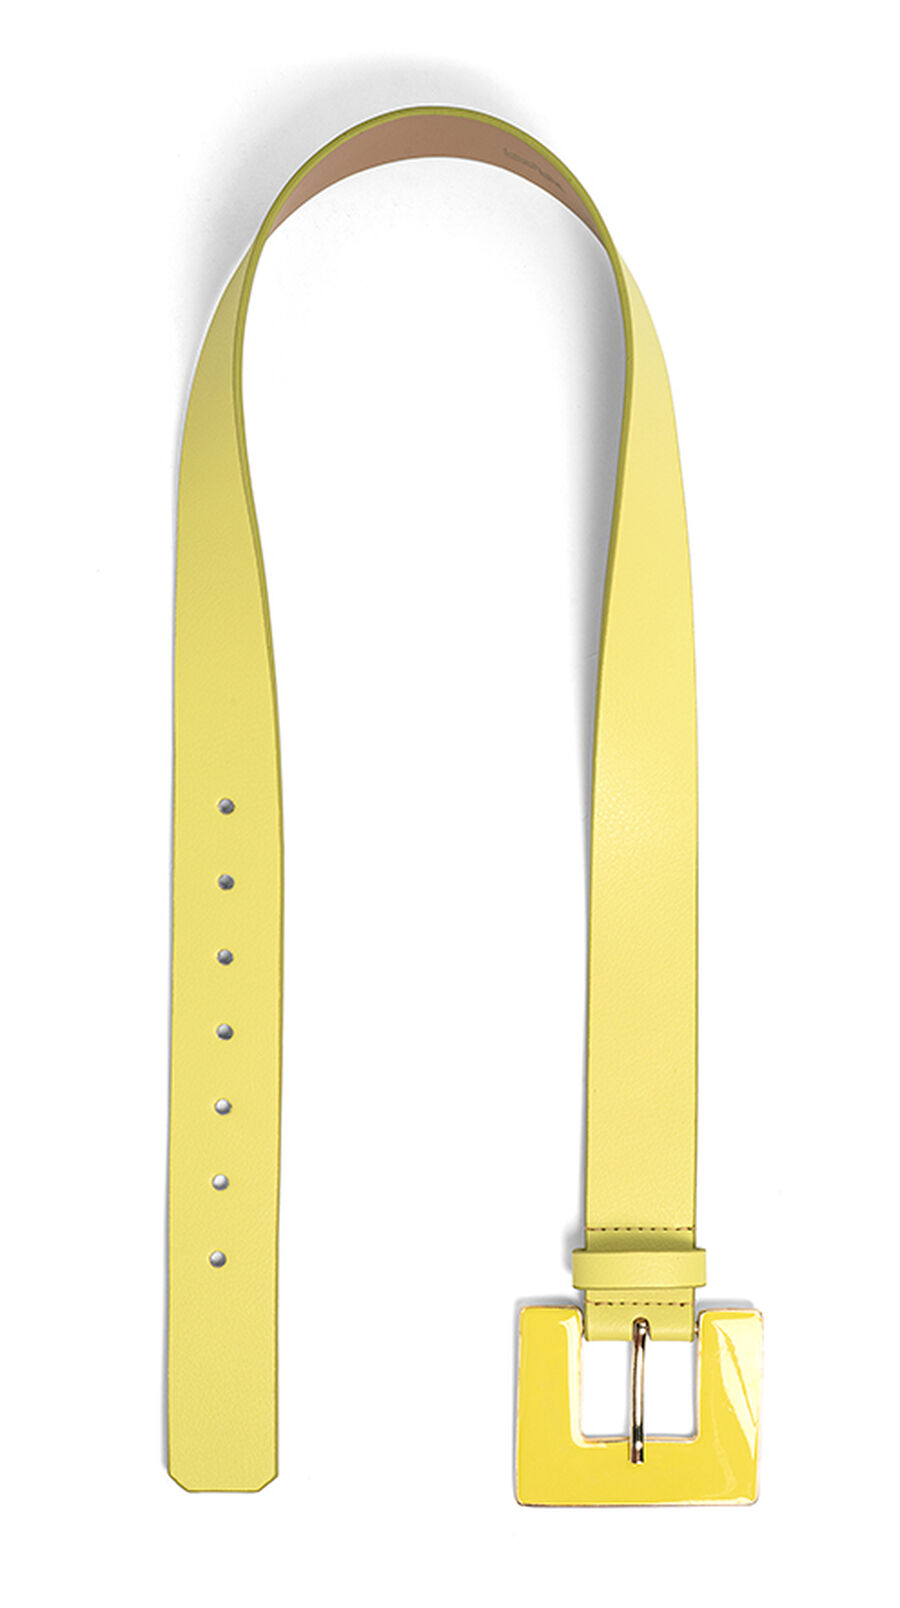 Cinto de Cintura Médio com Fivela Quadrada, , large.